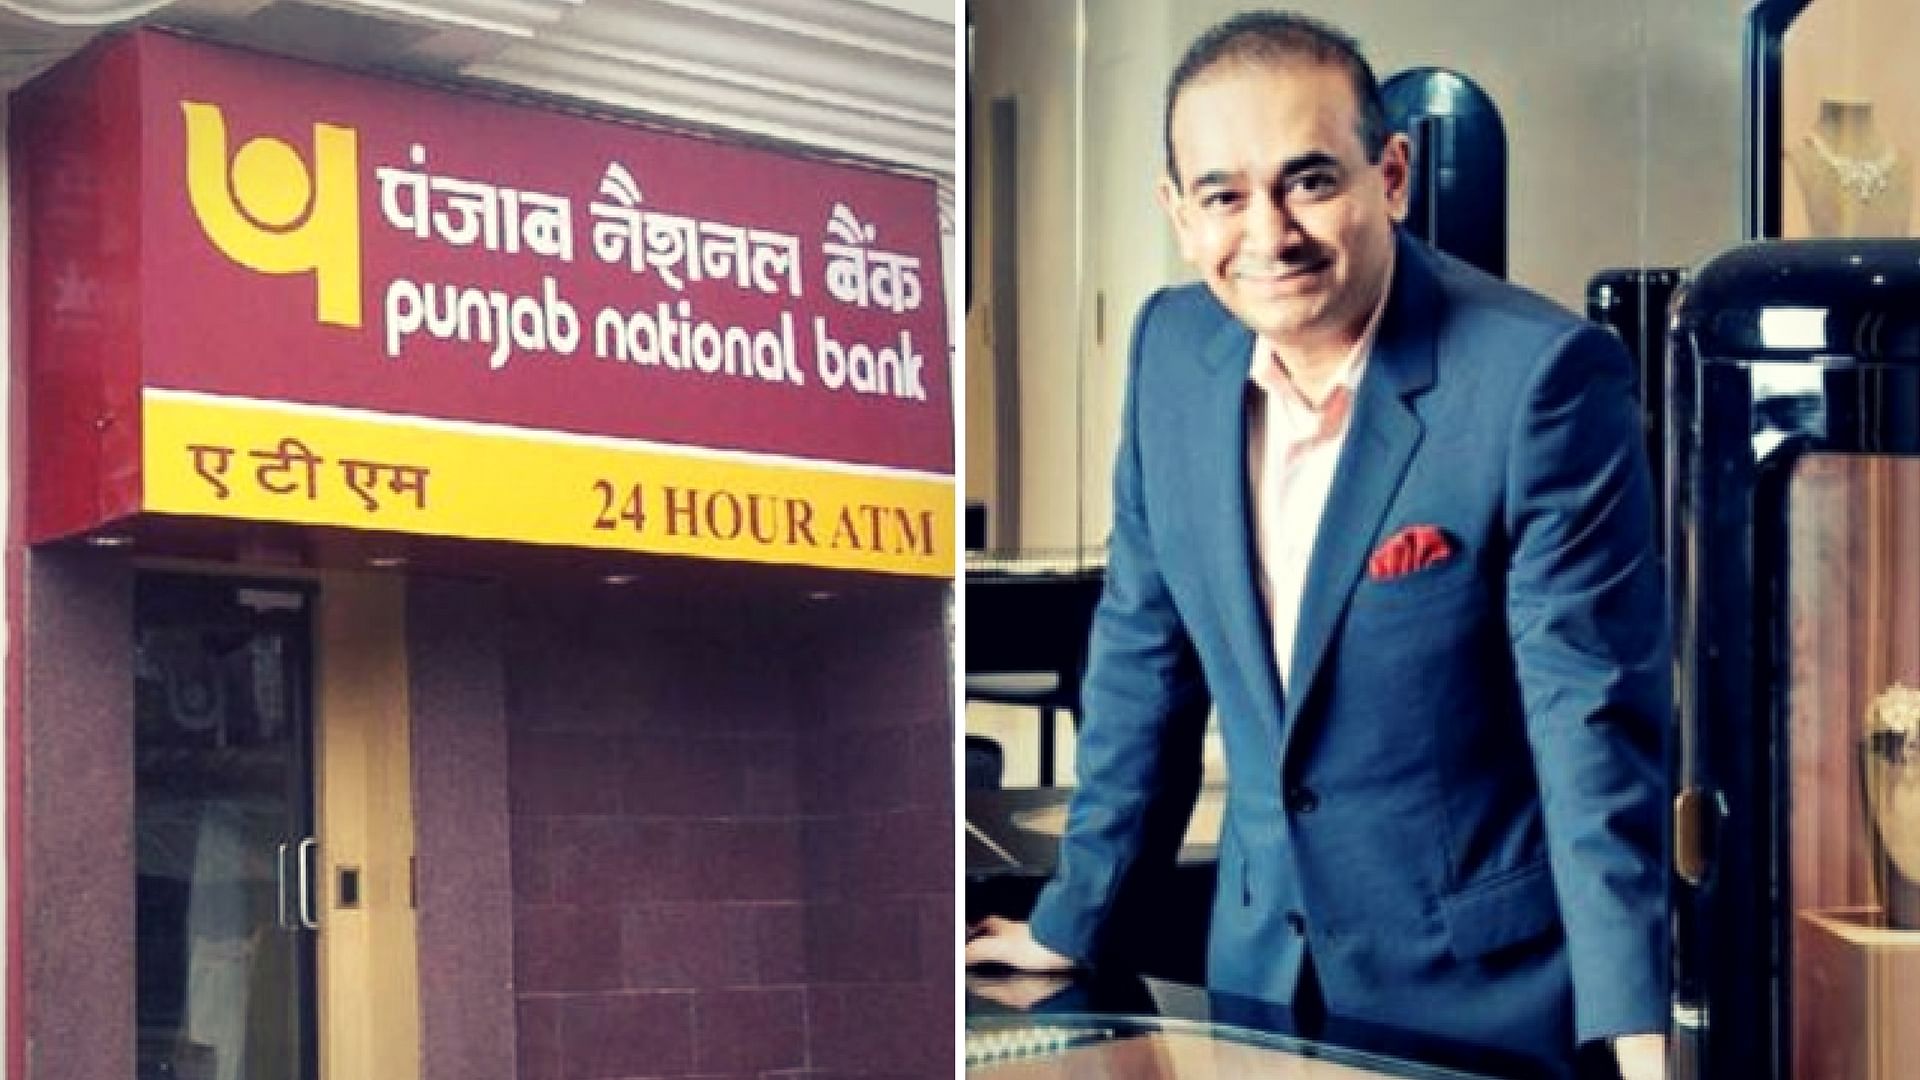 कितना बड़ा है पंजाब नेशनल बैंक घोटाला?